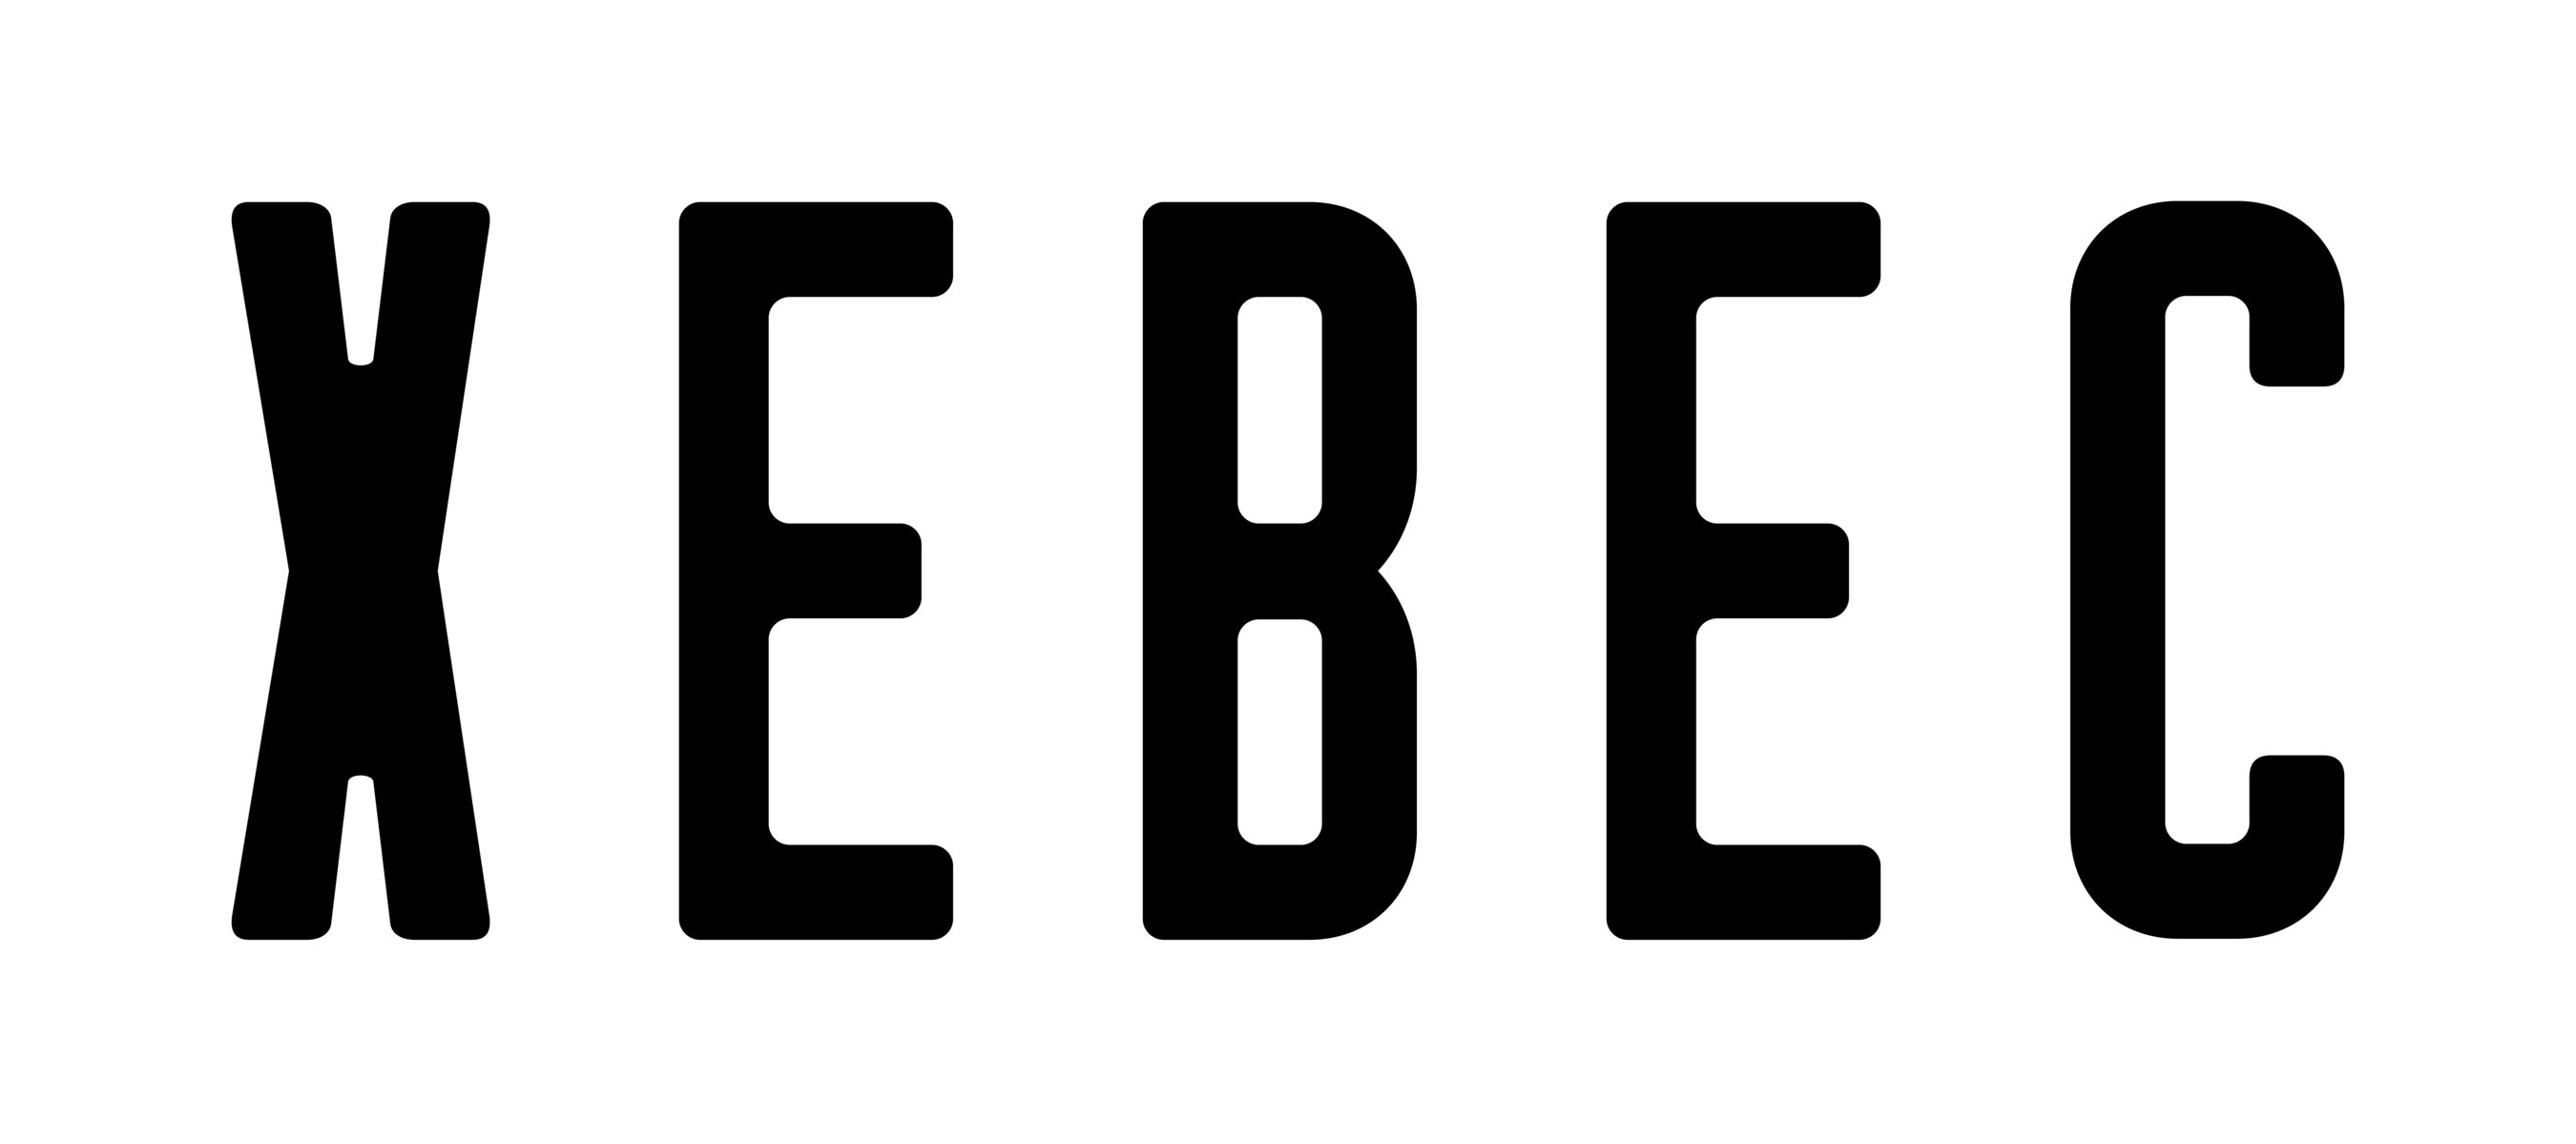 Xebec 2022 logo